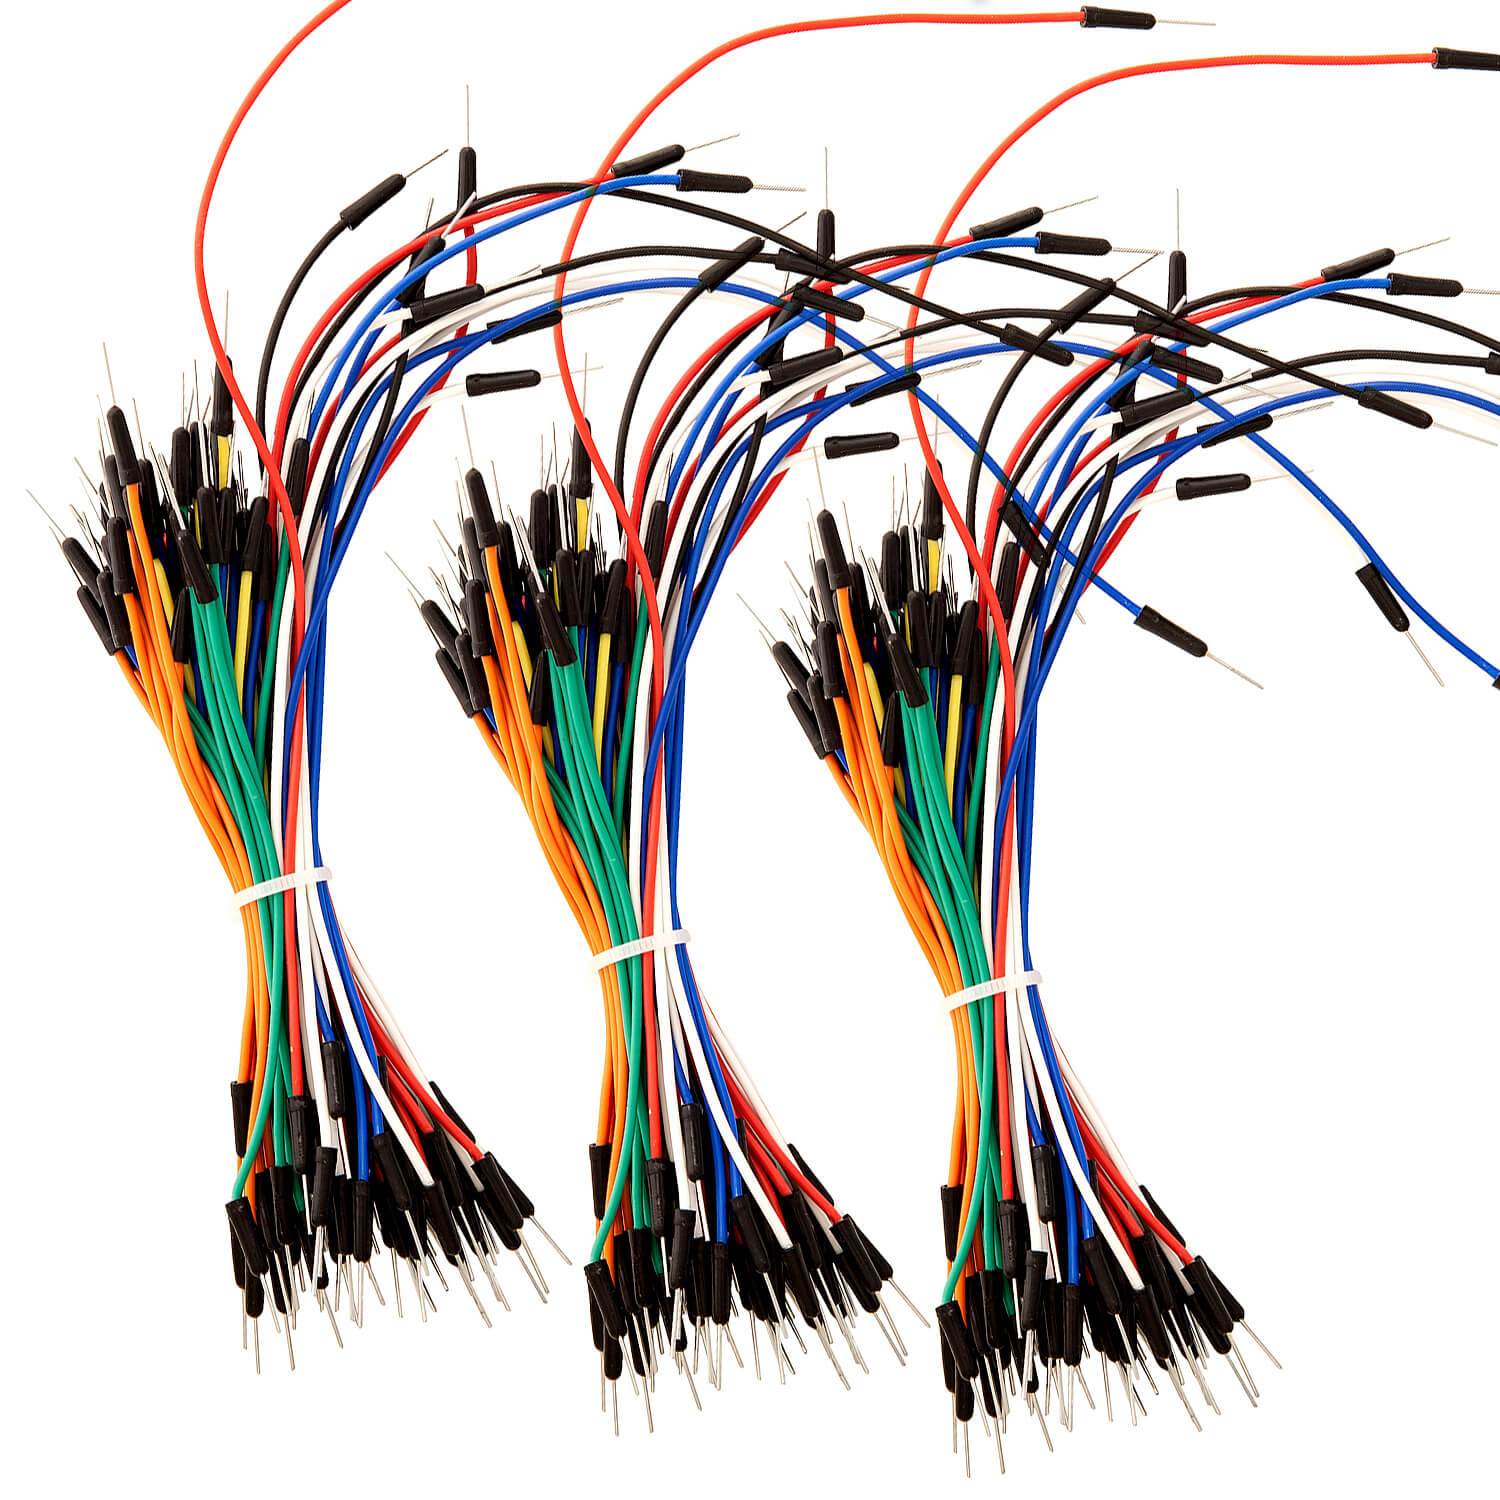 65Stk. Jumper Wire Kabel Steckbrücken für Arduino Breadboard, Steckbrett Arduino Zubehör AZ-Delivery 3x Jumper Wire 